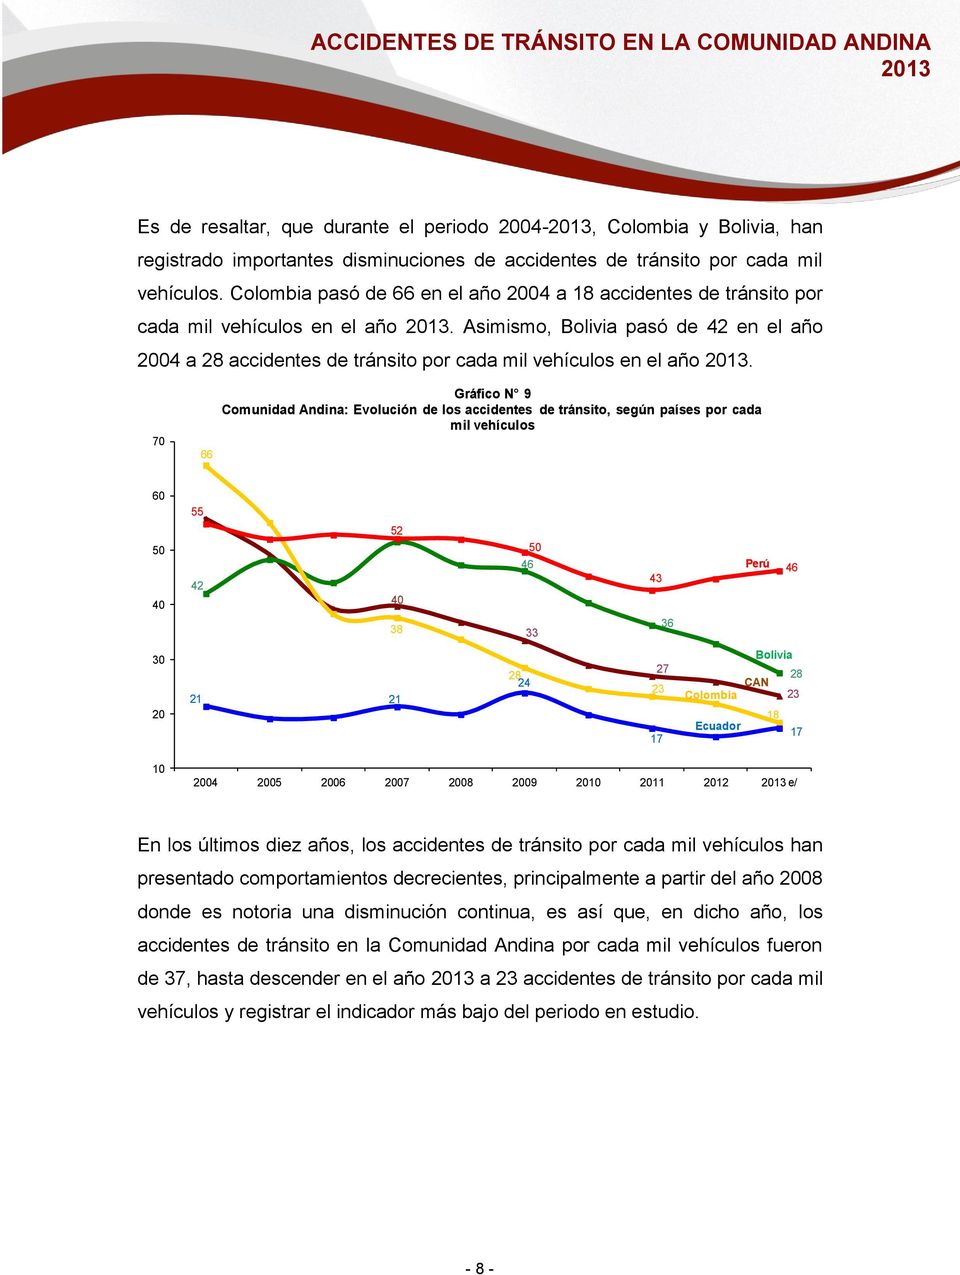 Asimismo, Bolivia pasó de 42 en el año 2004 a 28 accidentes de tránsito por cada mil vehículos en el año.